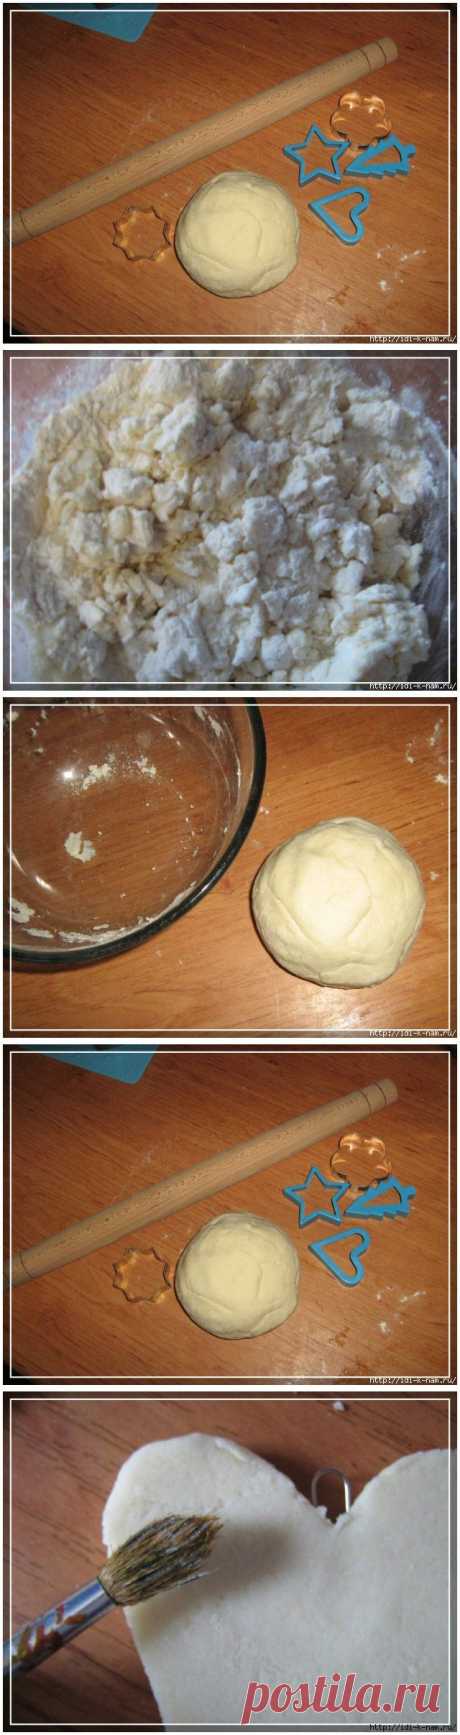 Как сделать соленое тесто